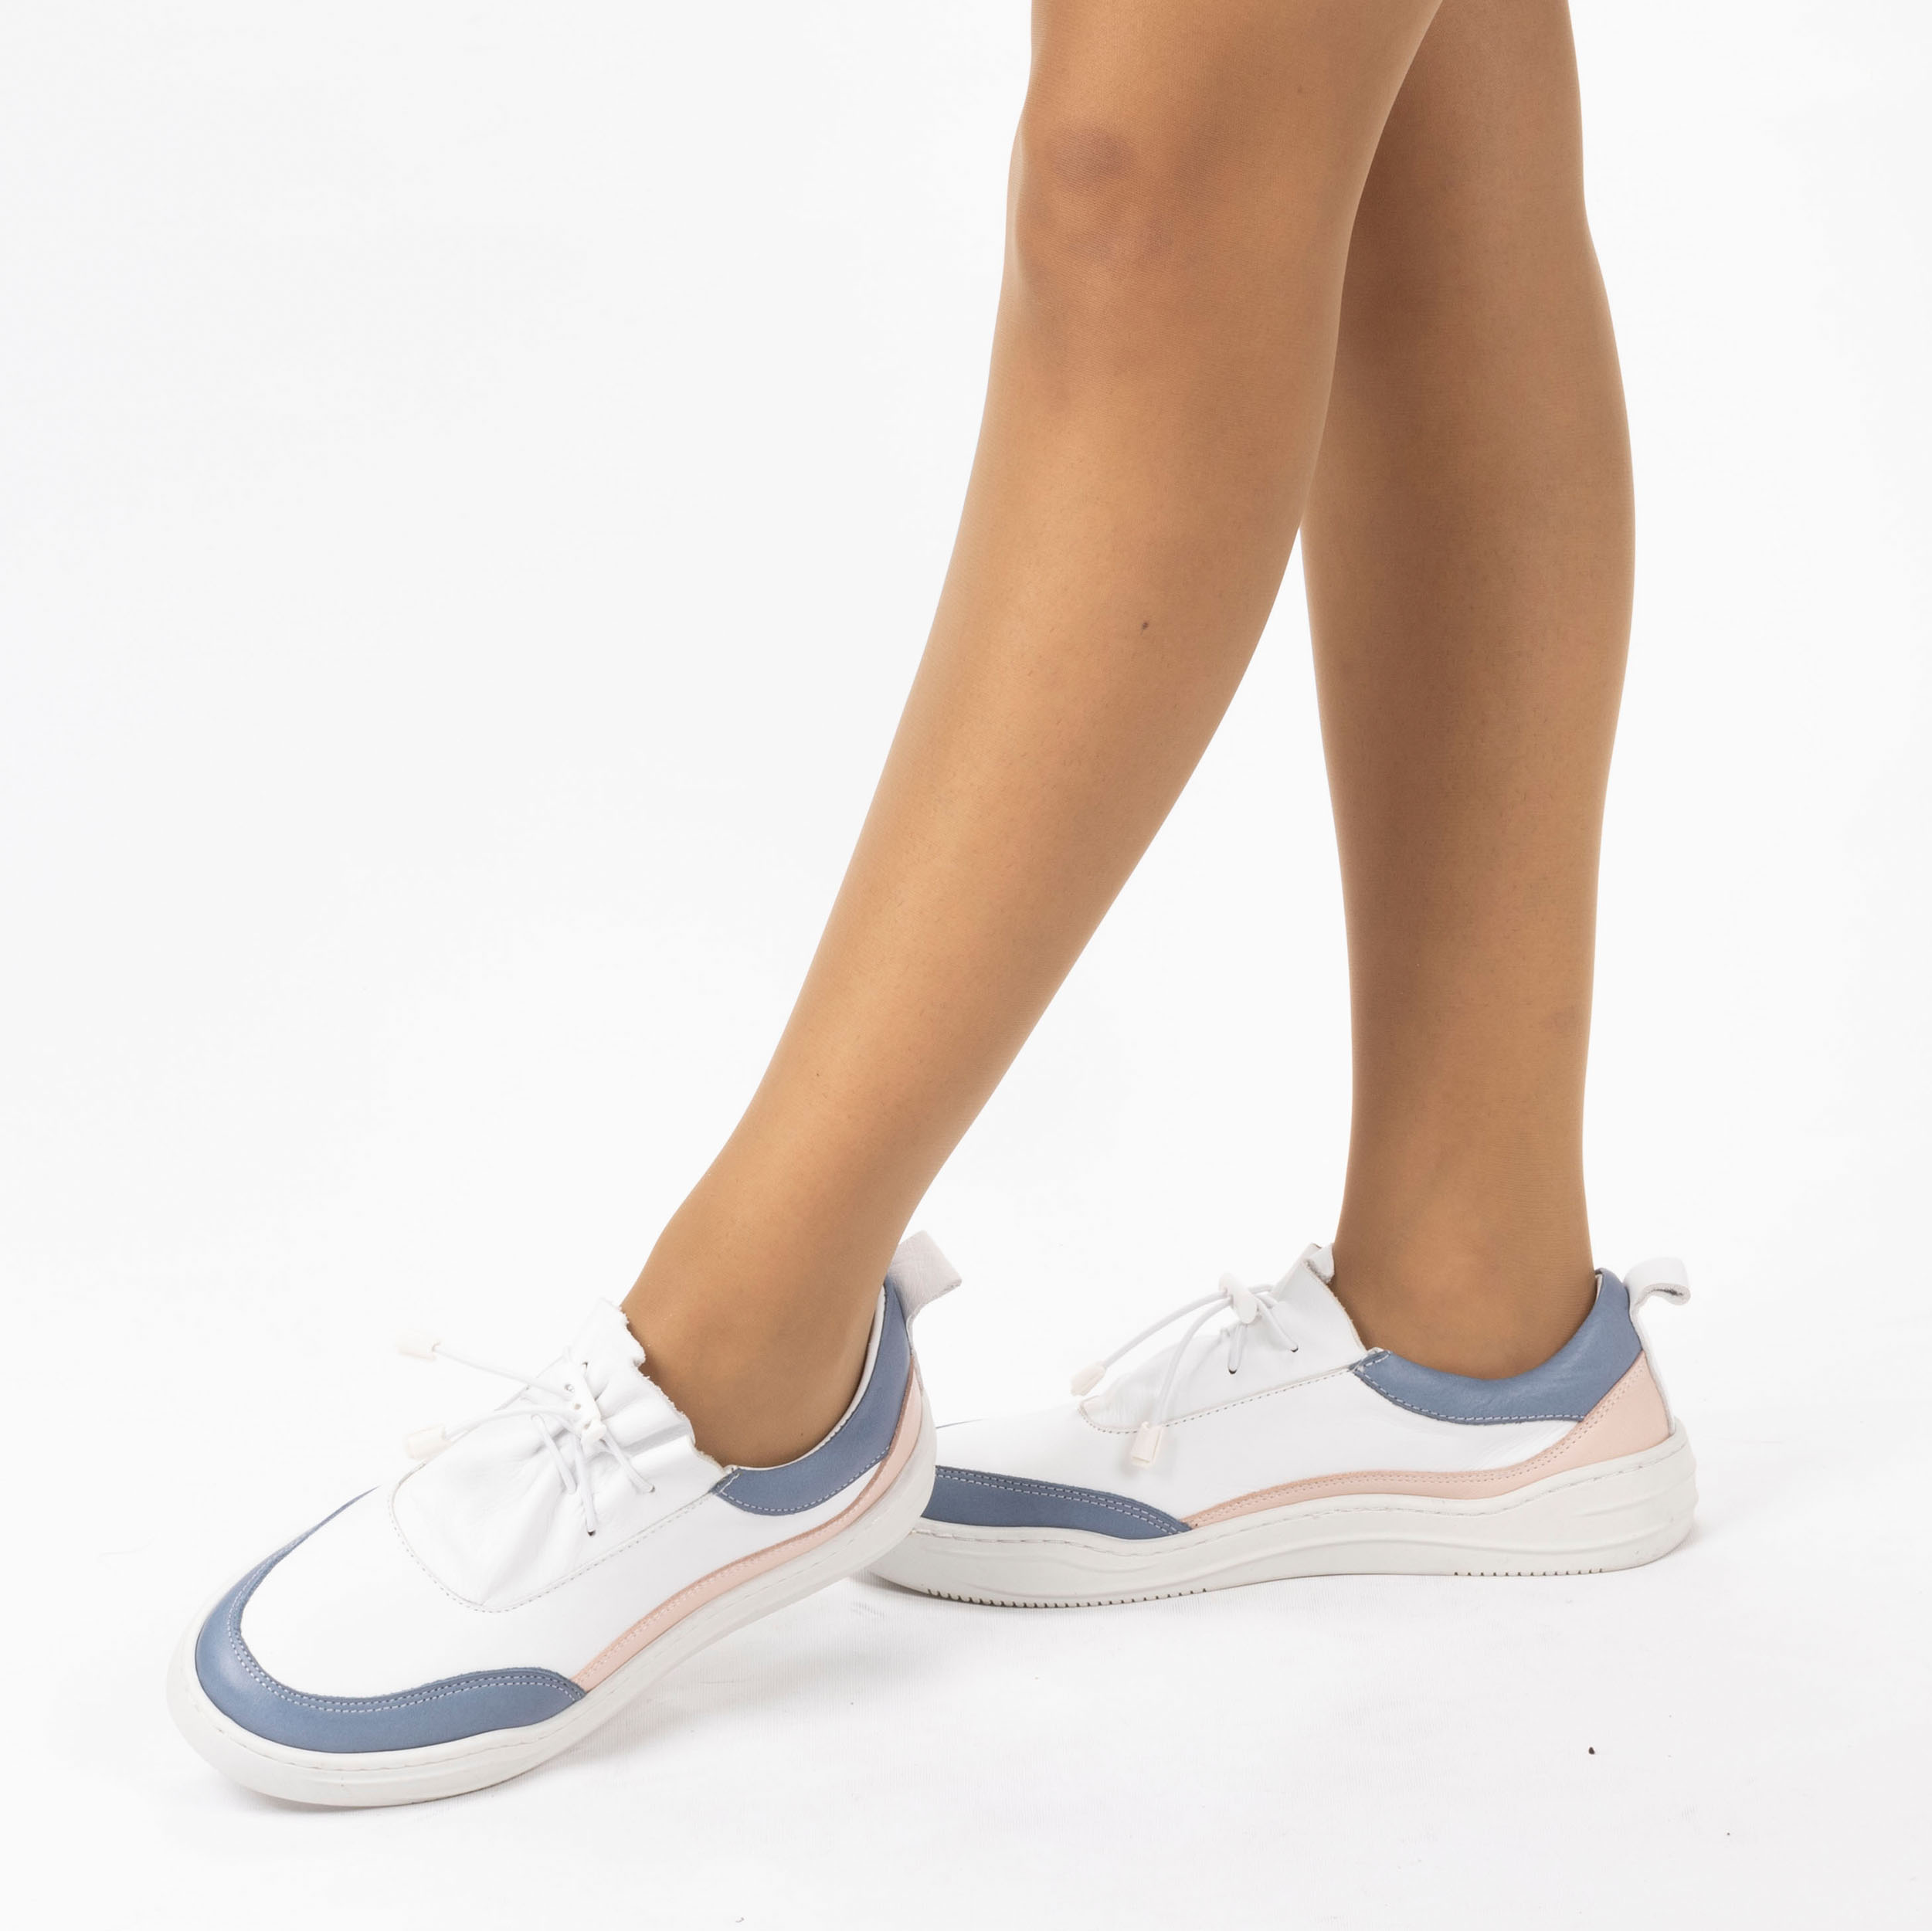 Kadın Hakiki Deri  Günlük Spor Ayakkabı / Sneakers, Renk: Mavi - Pembe, Beden: 36